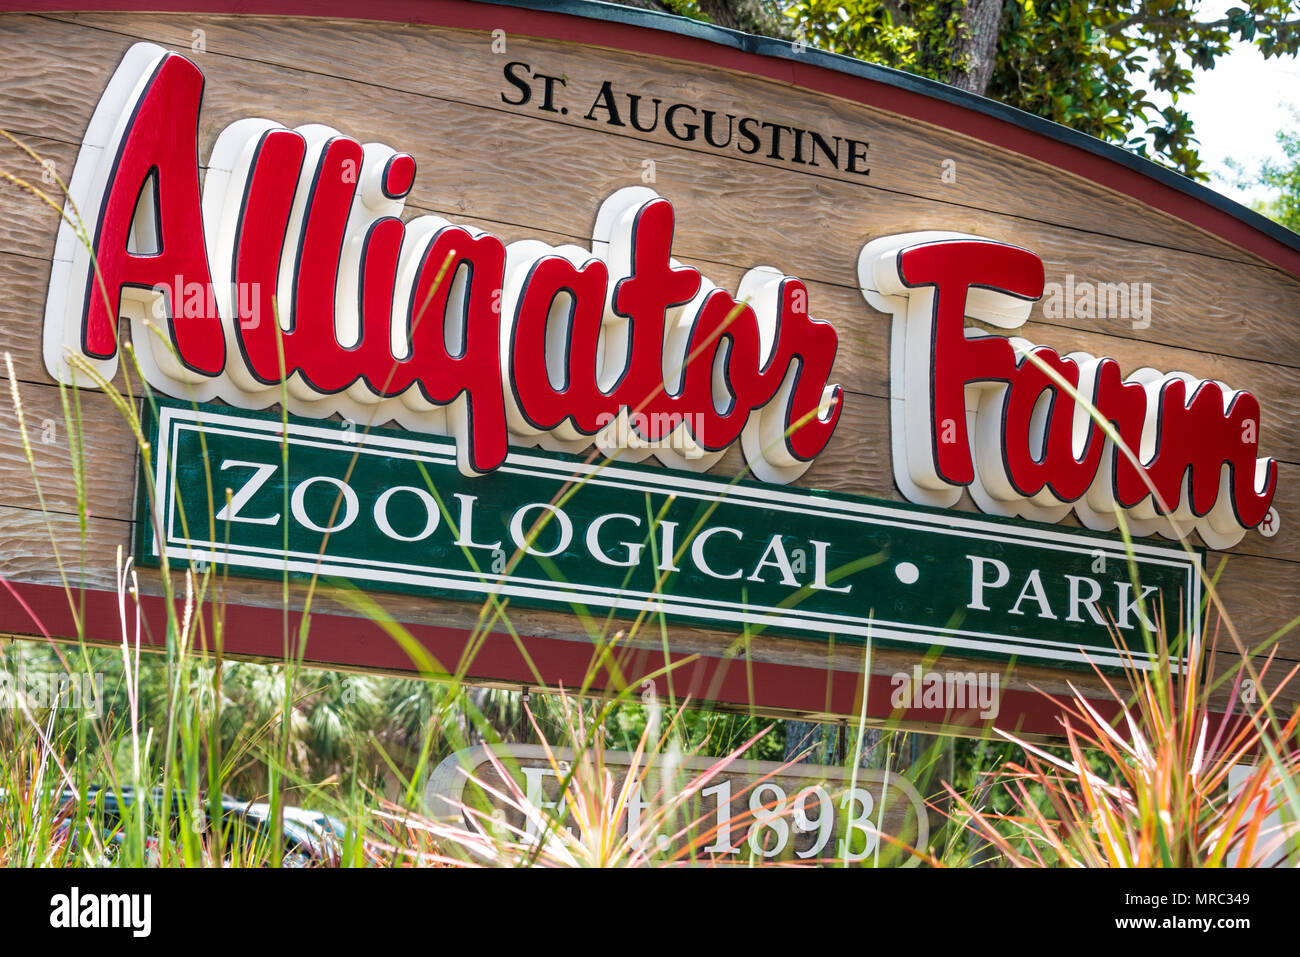 La rue Augustine Alligator Farm Zoological Park sur l'Île Anastasia à Saint Augustine, en Floride, est une attraction touristique populaire créée en 1893. Banque D'Images